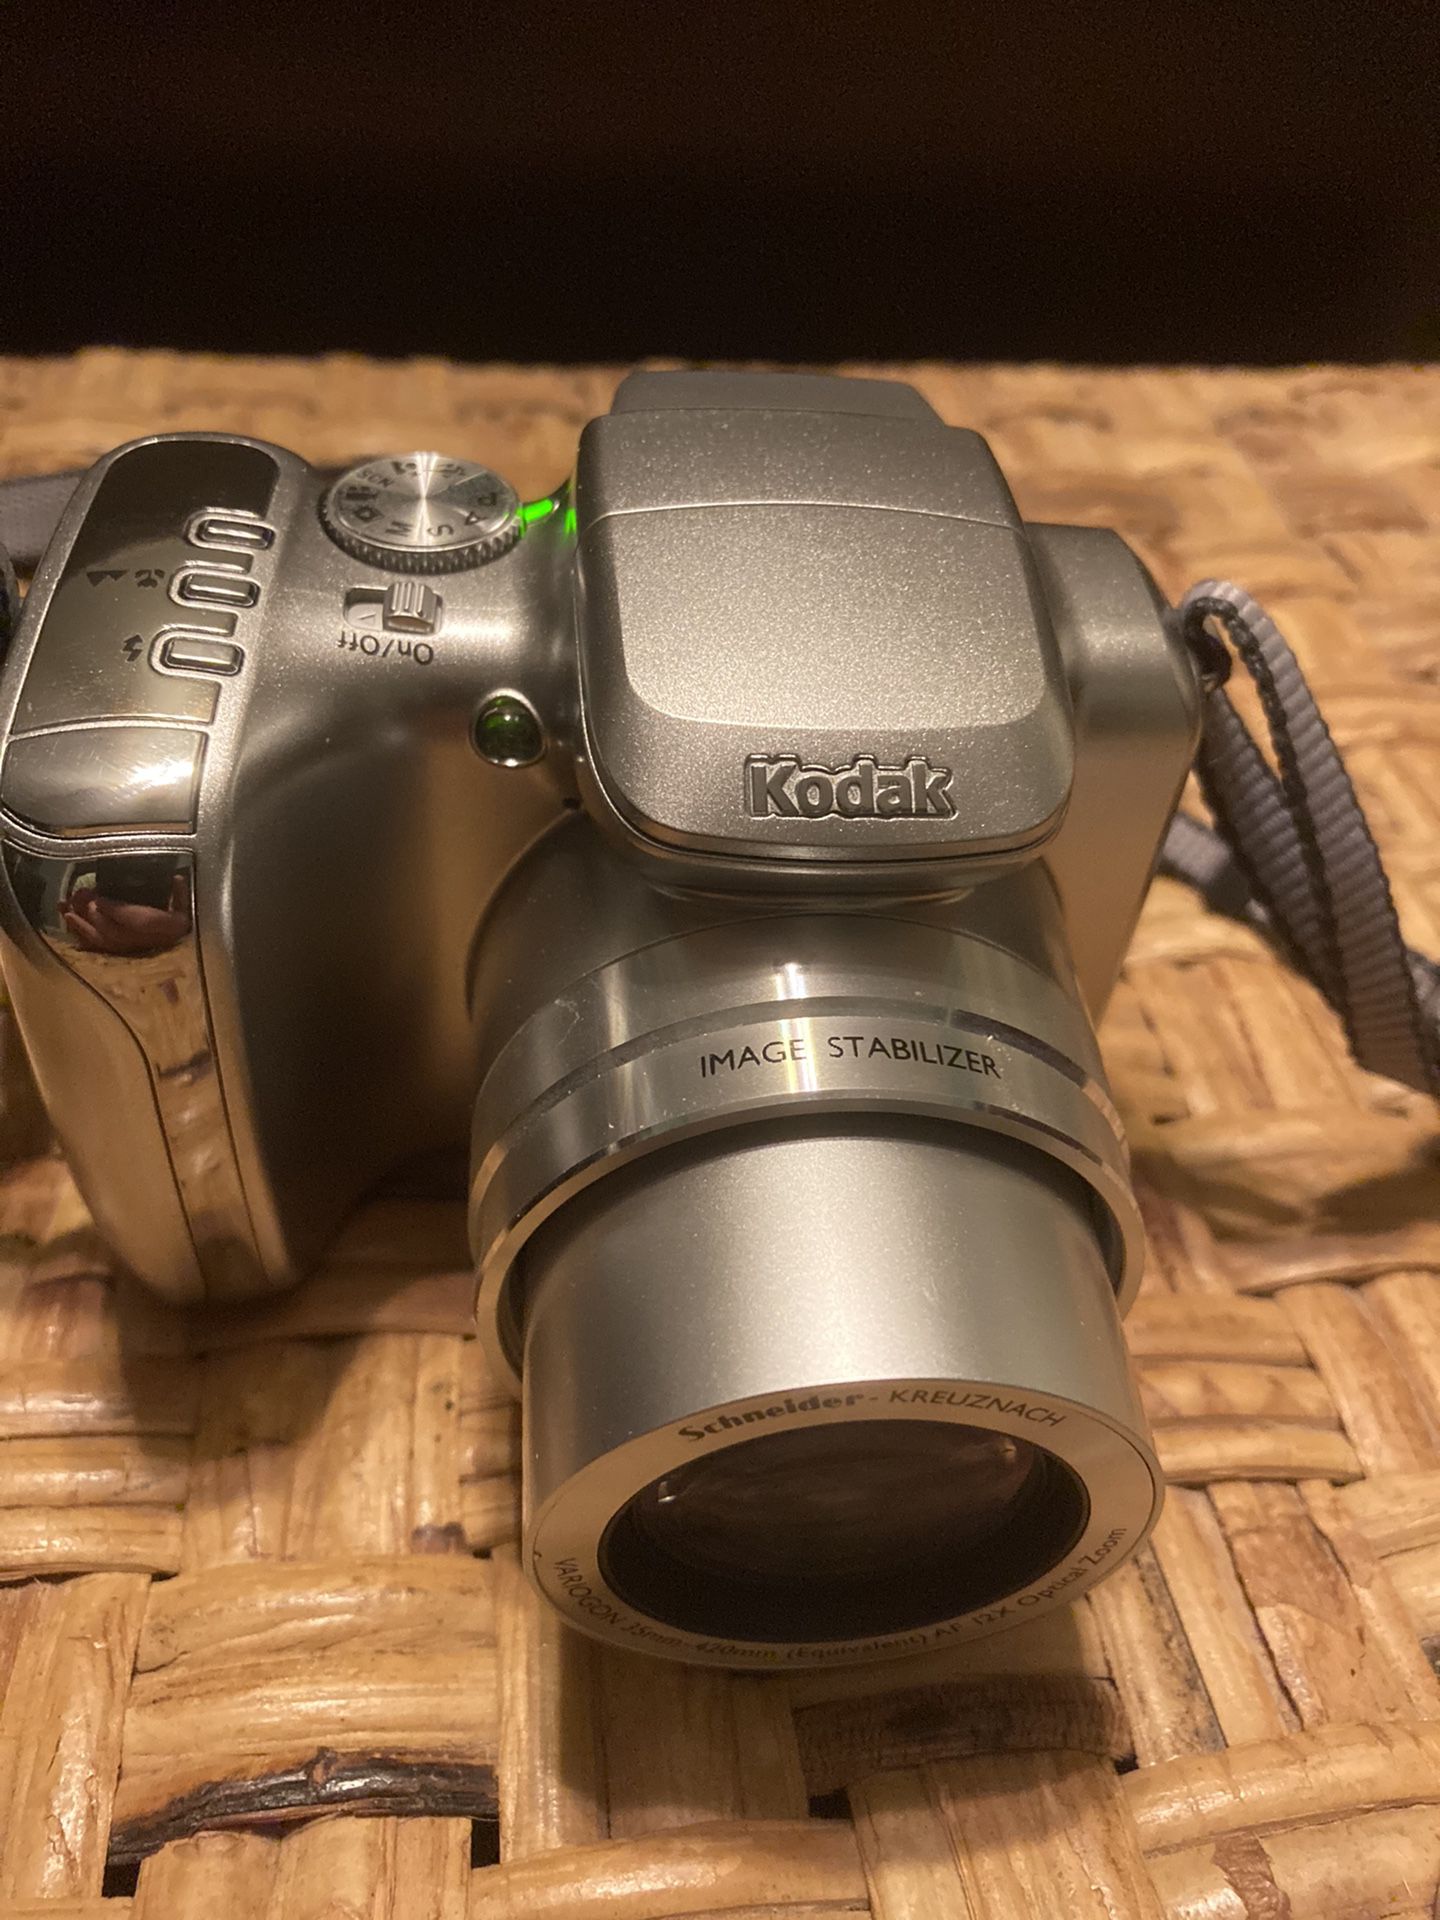 Kodak camera model 2612